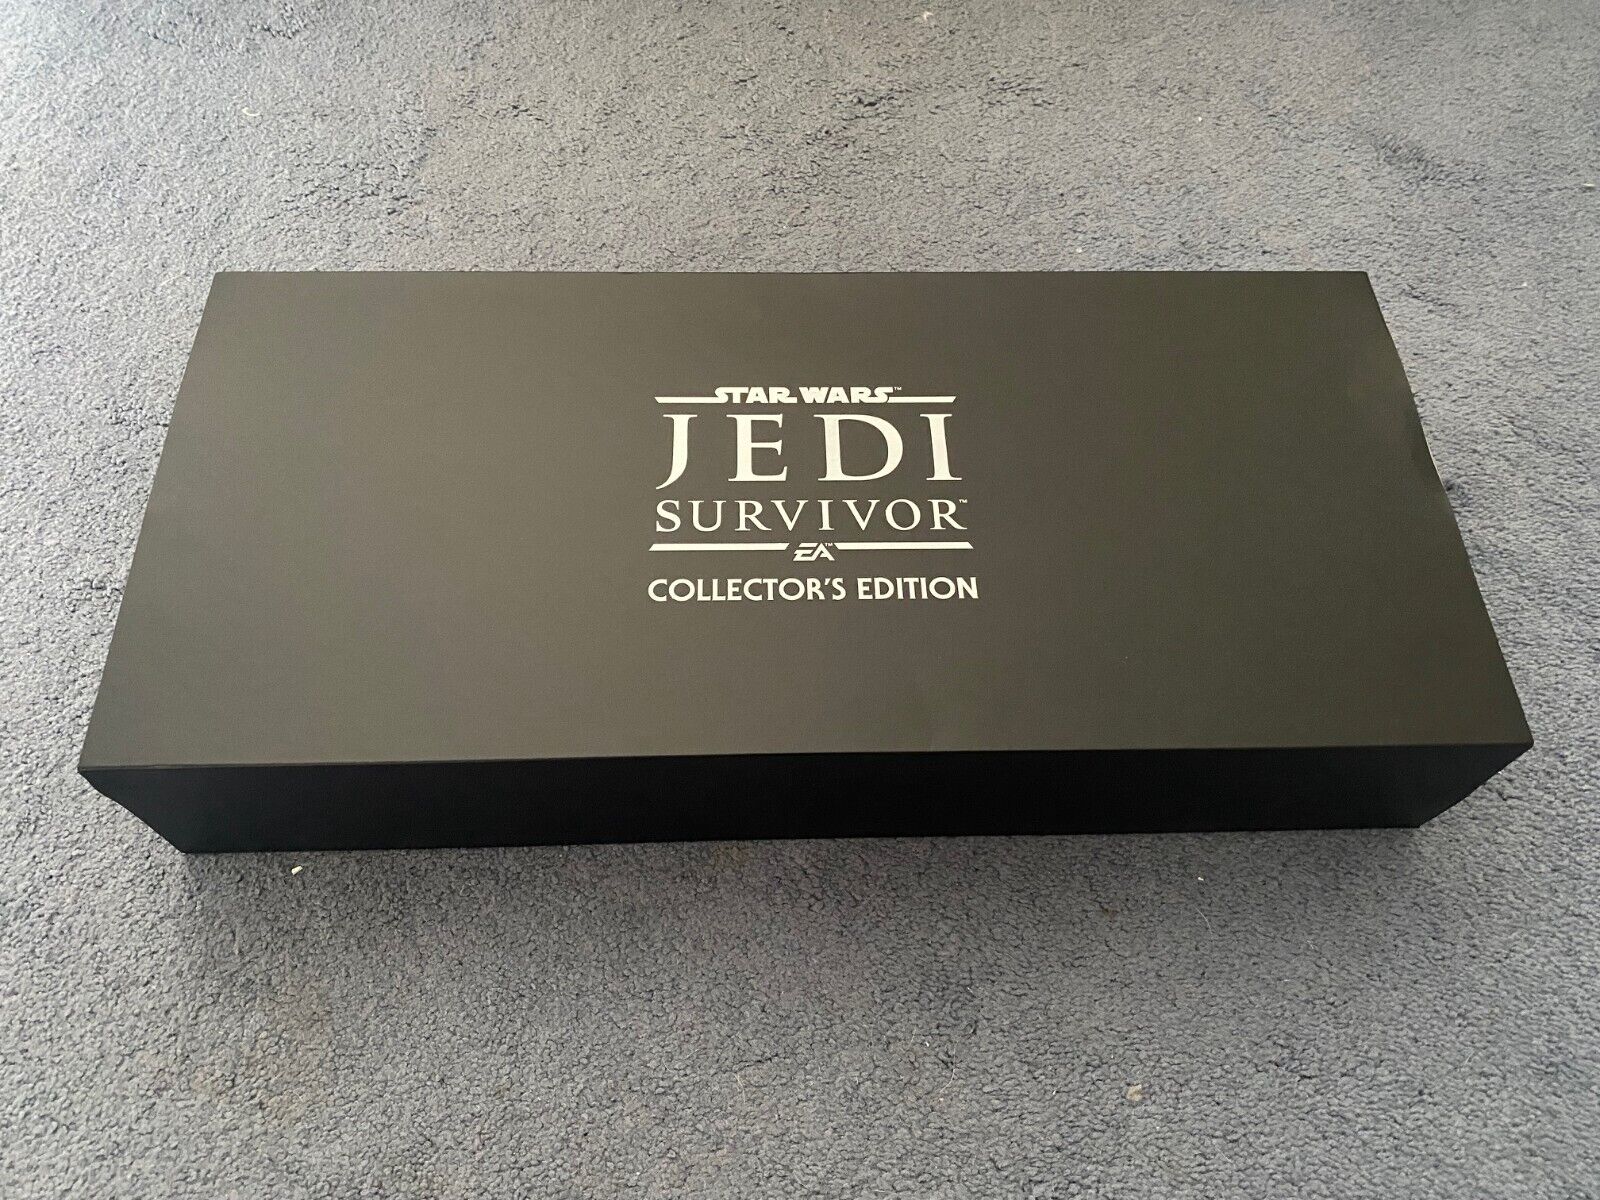 Jedi Survivor Collector's Edition Lightsaber Star Wars, PC Steelcase